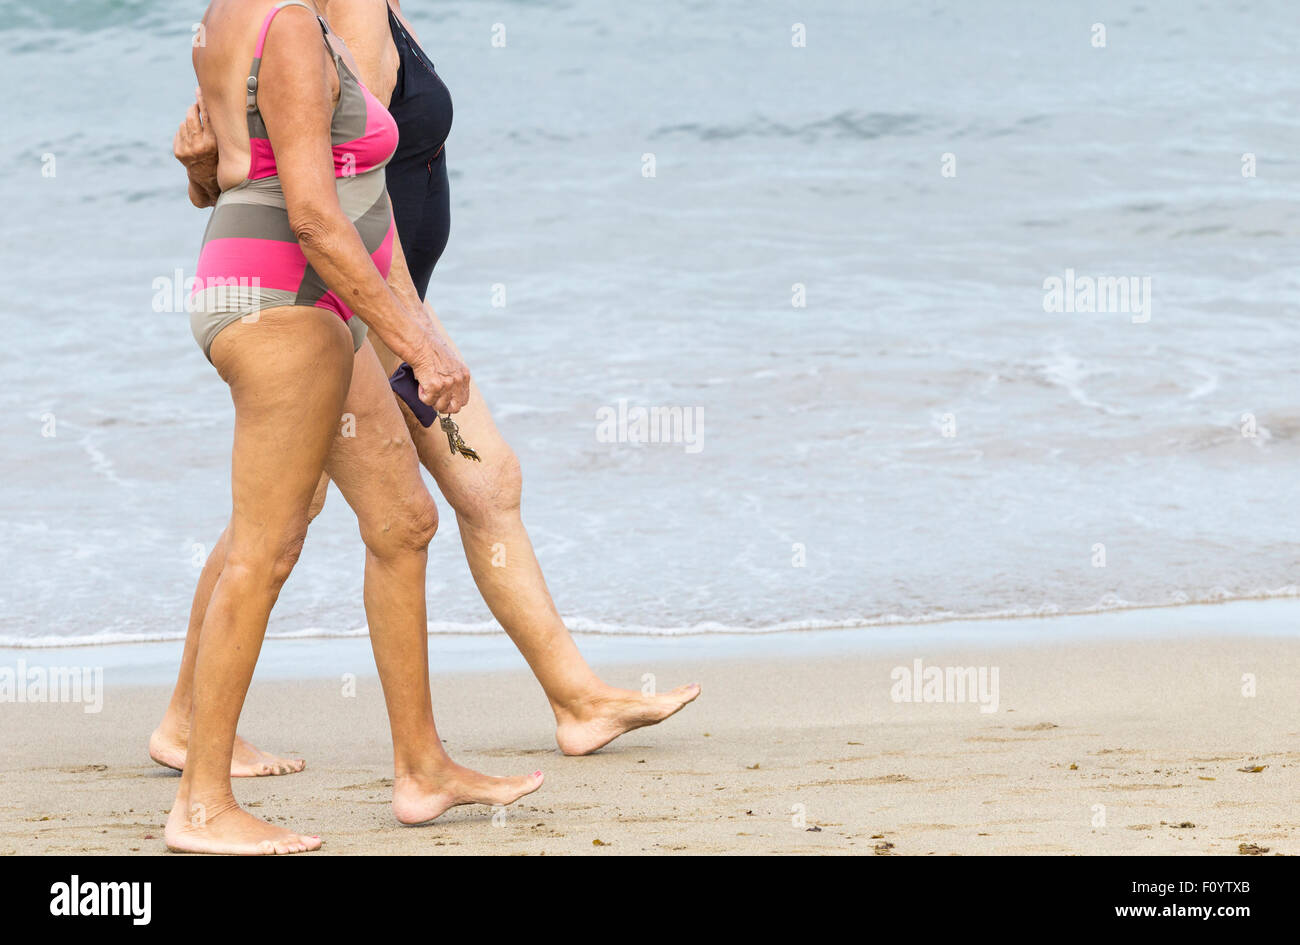 Two elderly women walking on beach Stock Photo